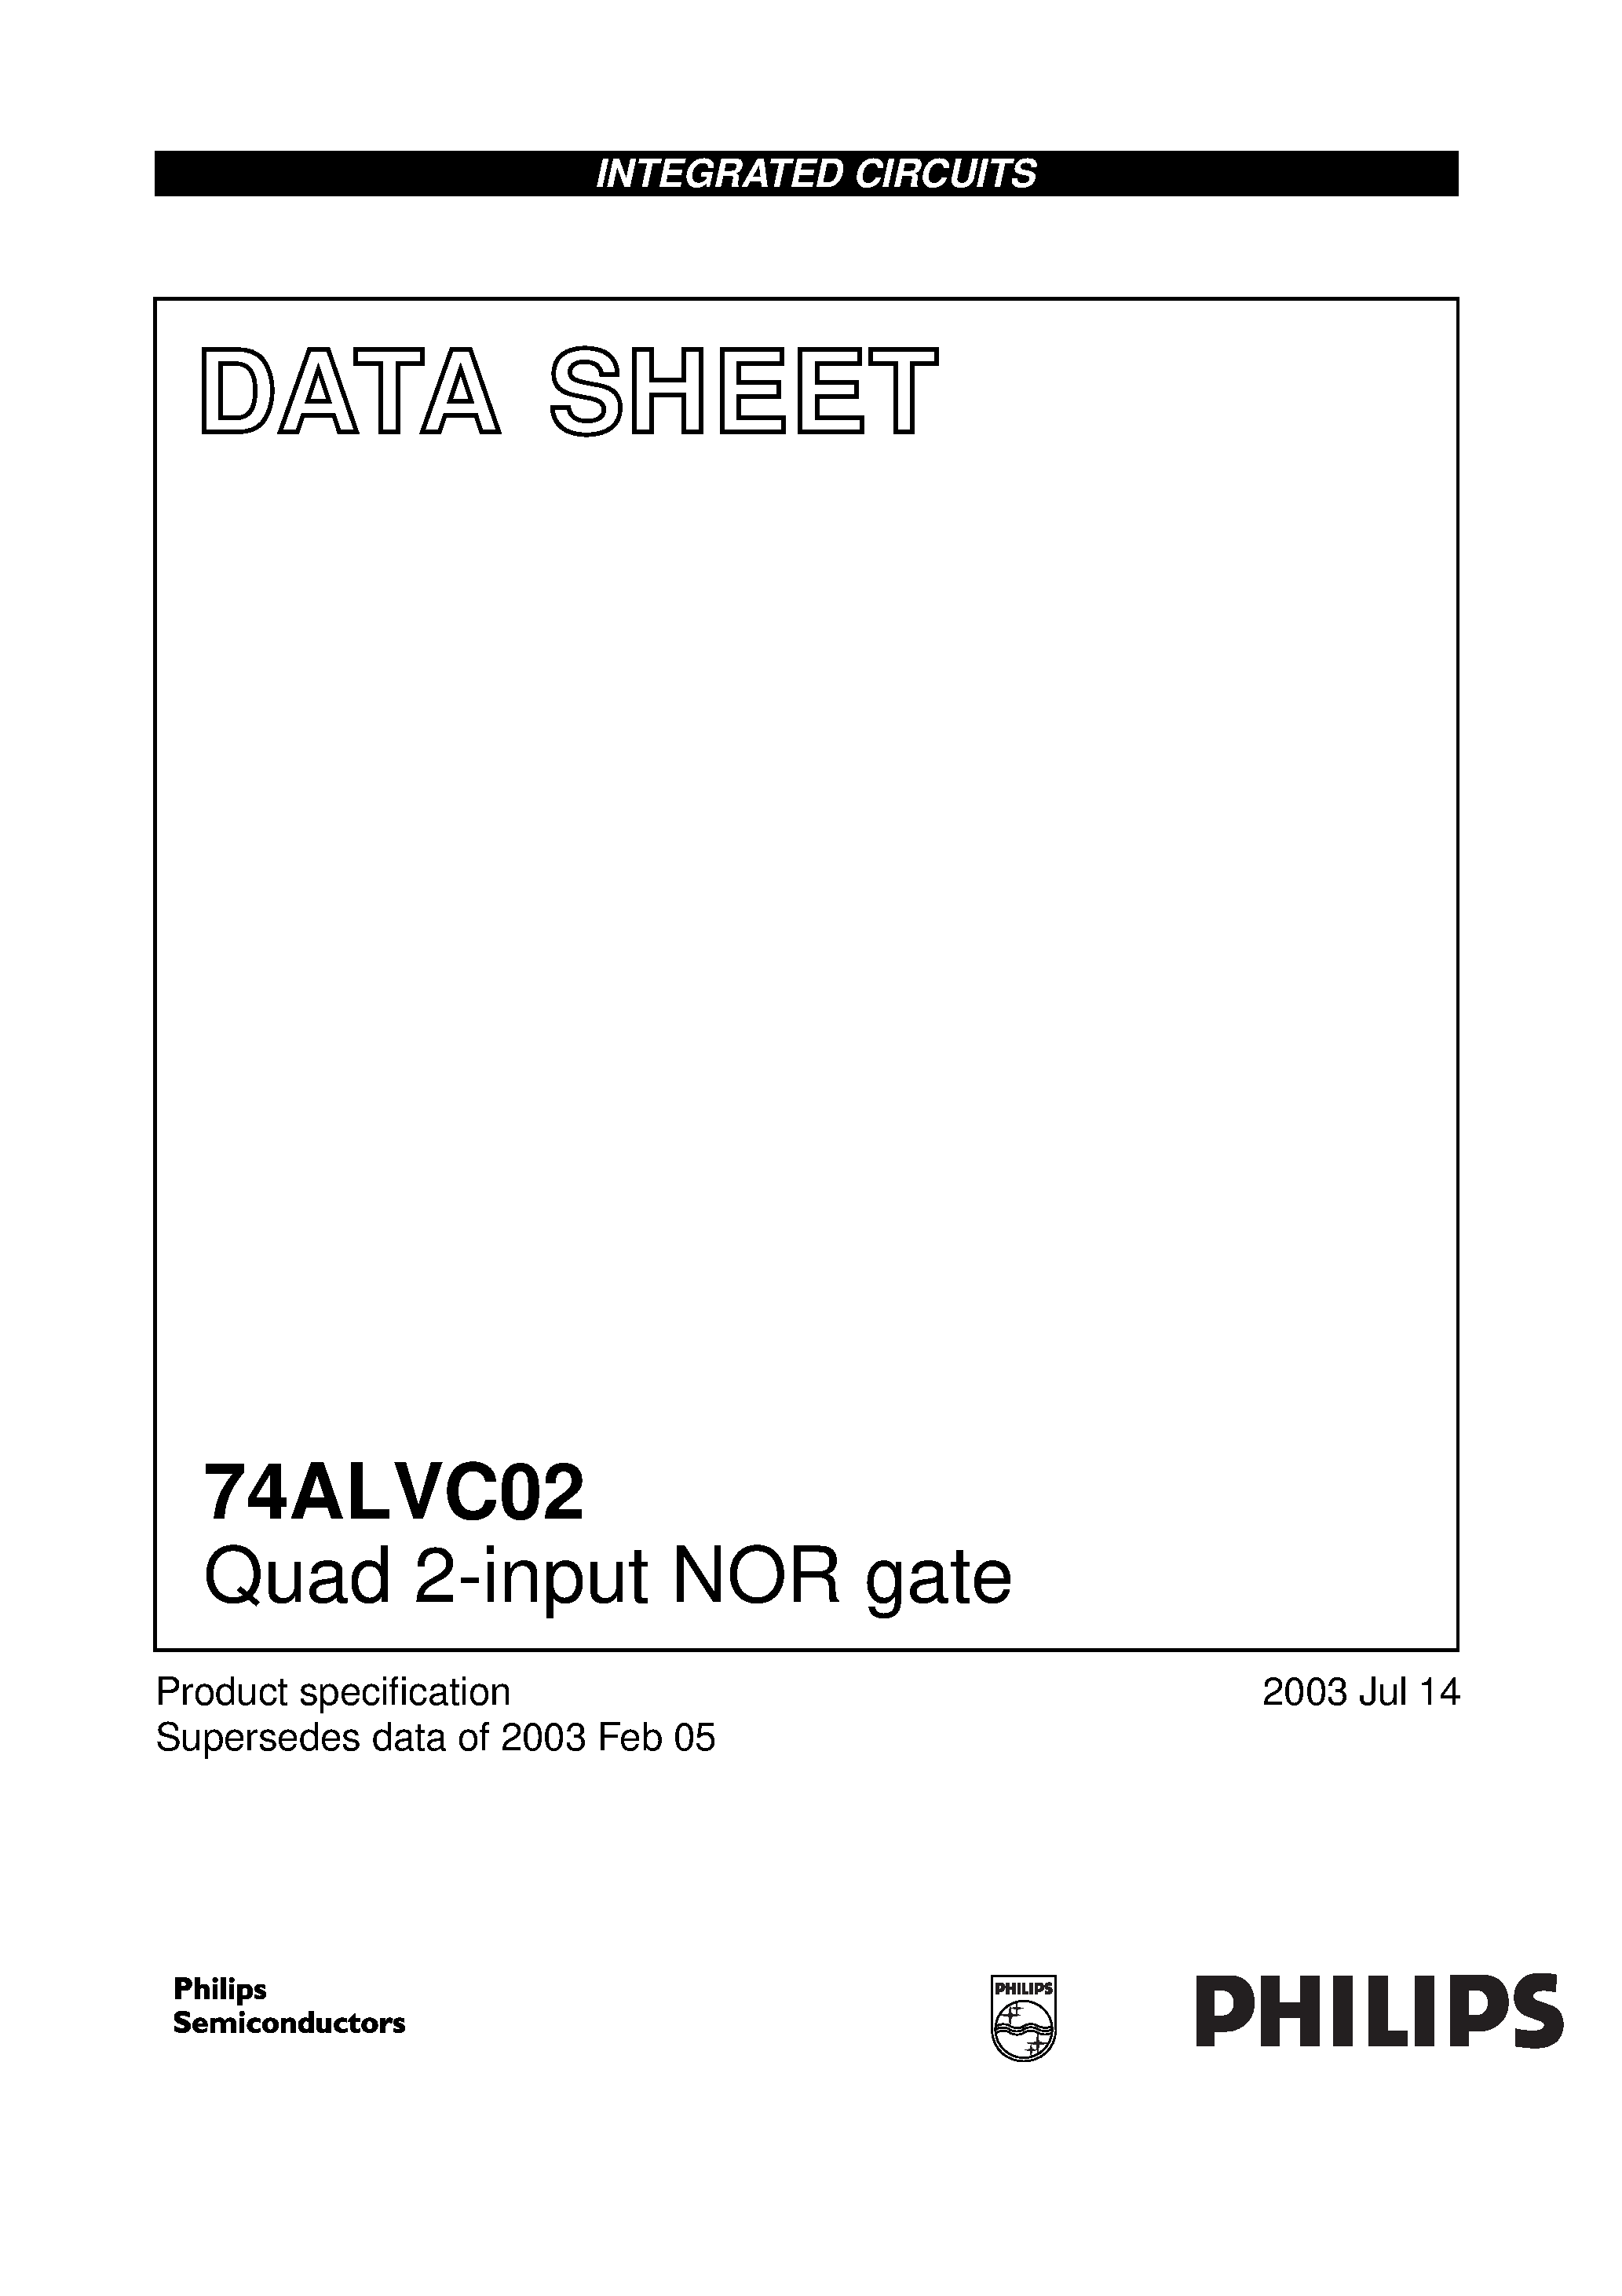 Даташит 74ALVC02BQ - Quad 2-input NOR gate страница 1